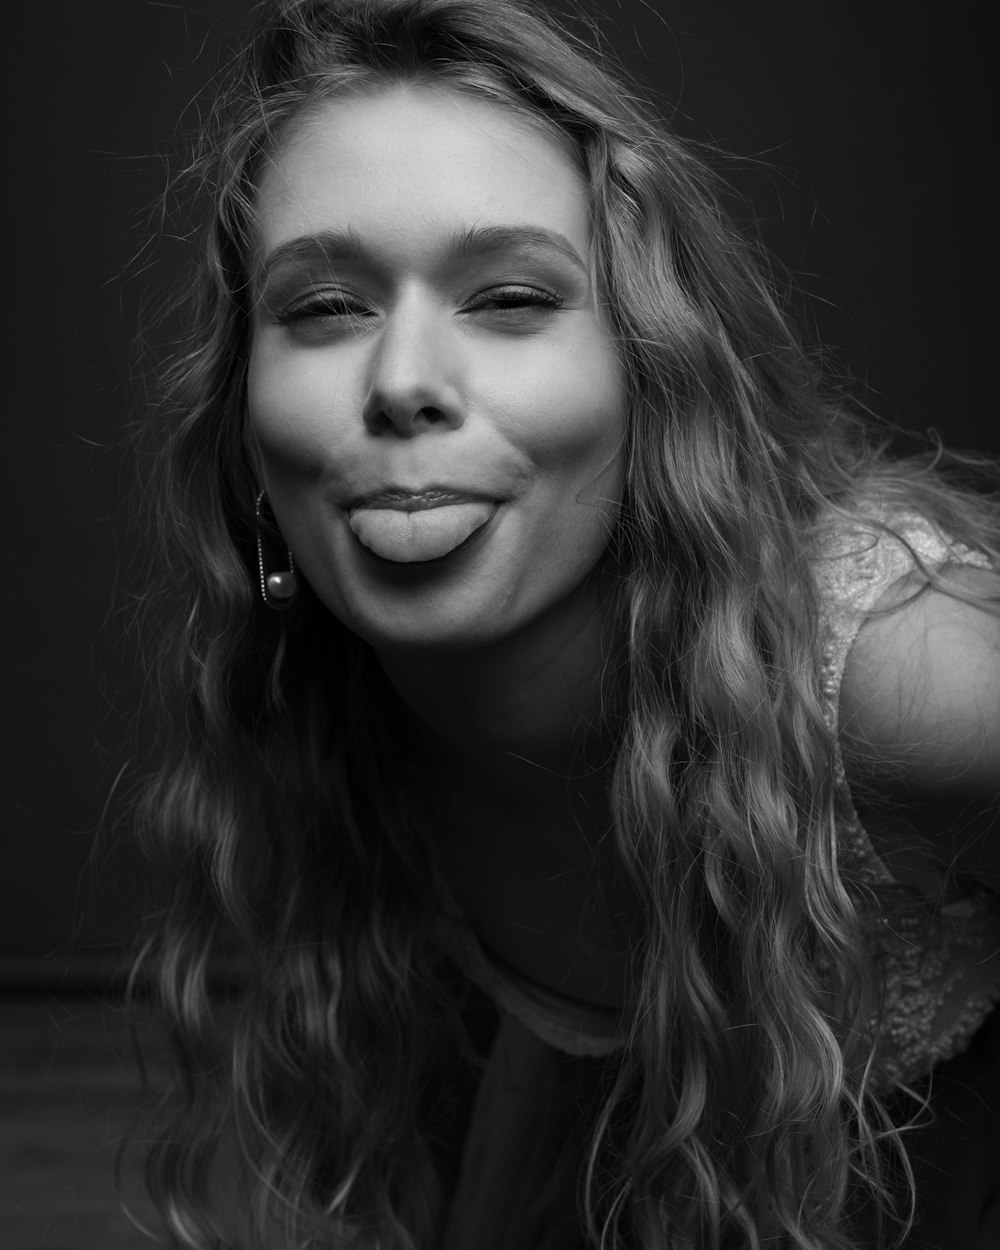 una foto en blanco y negro de una mujer haciendo una cara divertida